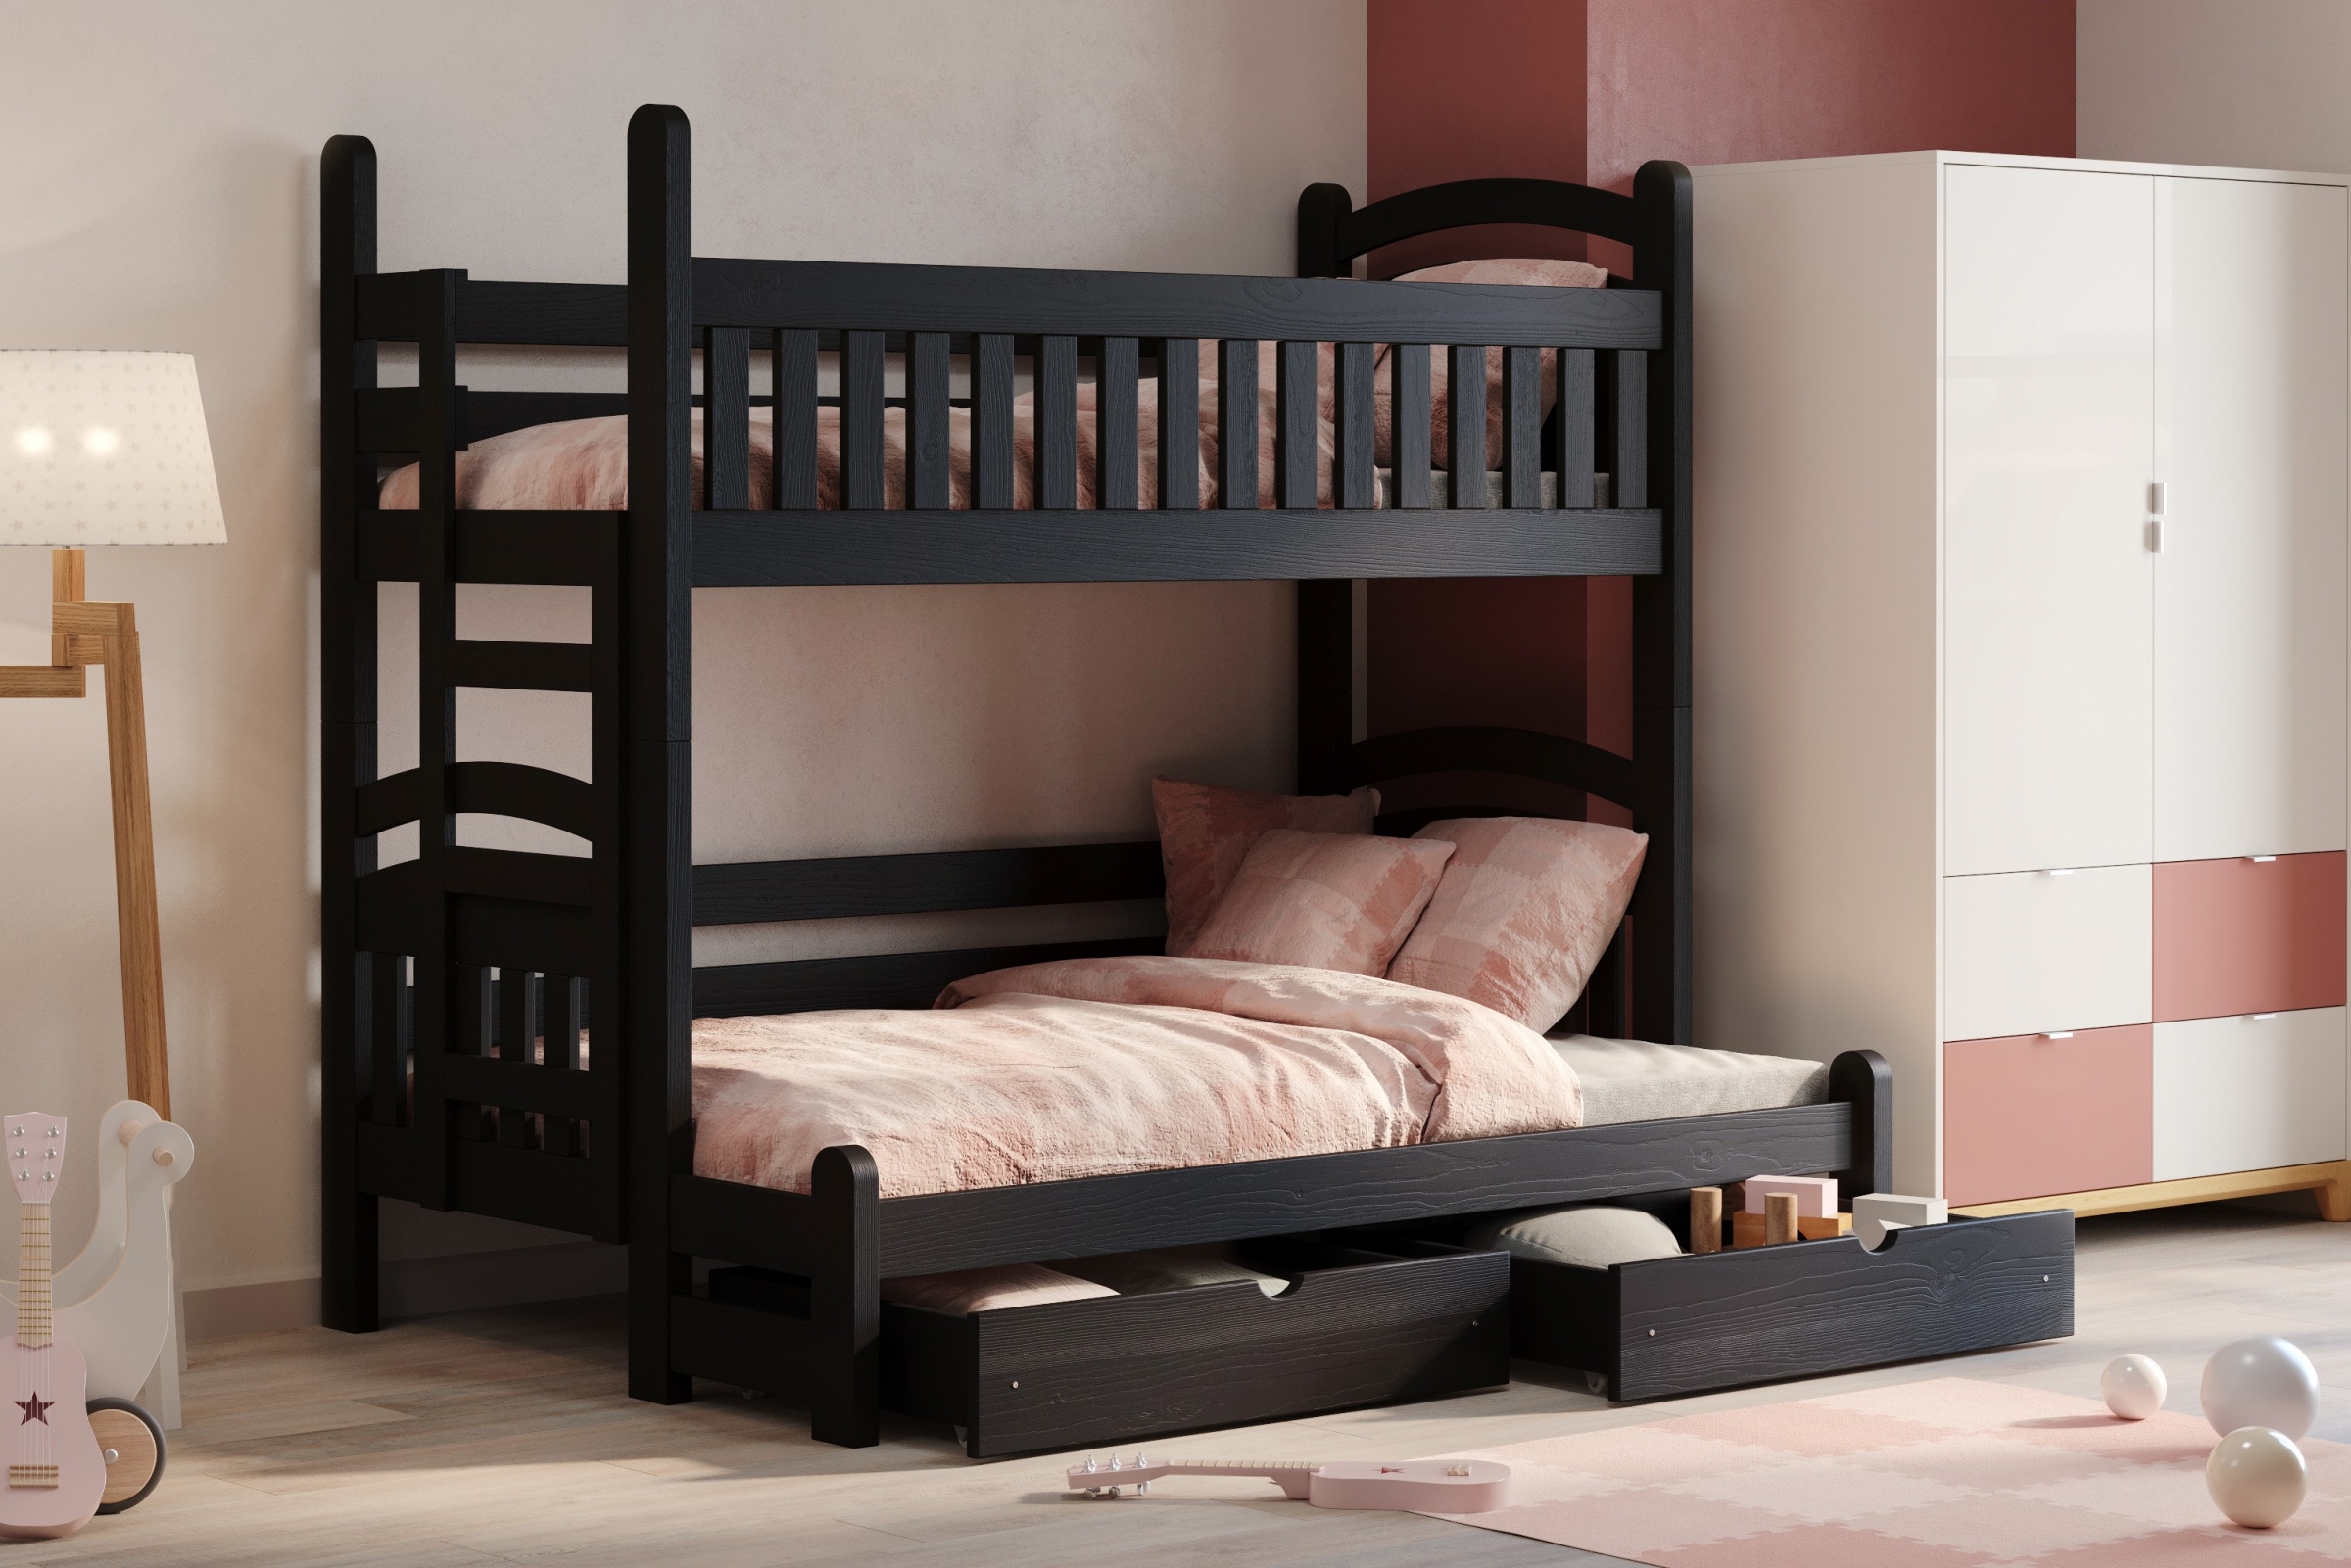 Amely Maxi emeletes ágy, jobb oldal - fekete, 90x200/140x200 Emeletes ágy Amely Maxi prawostronne - fekete - aranzacja